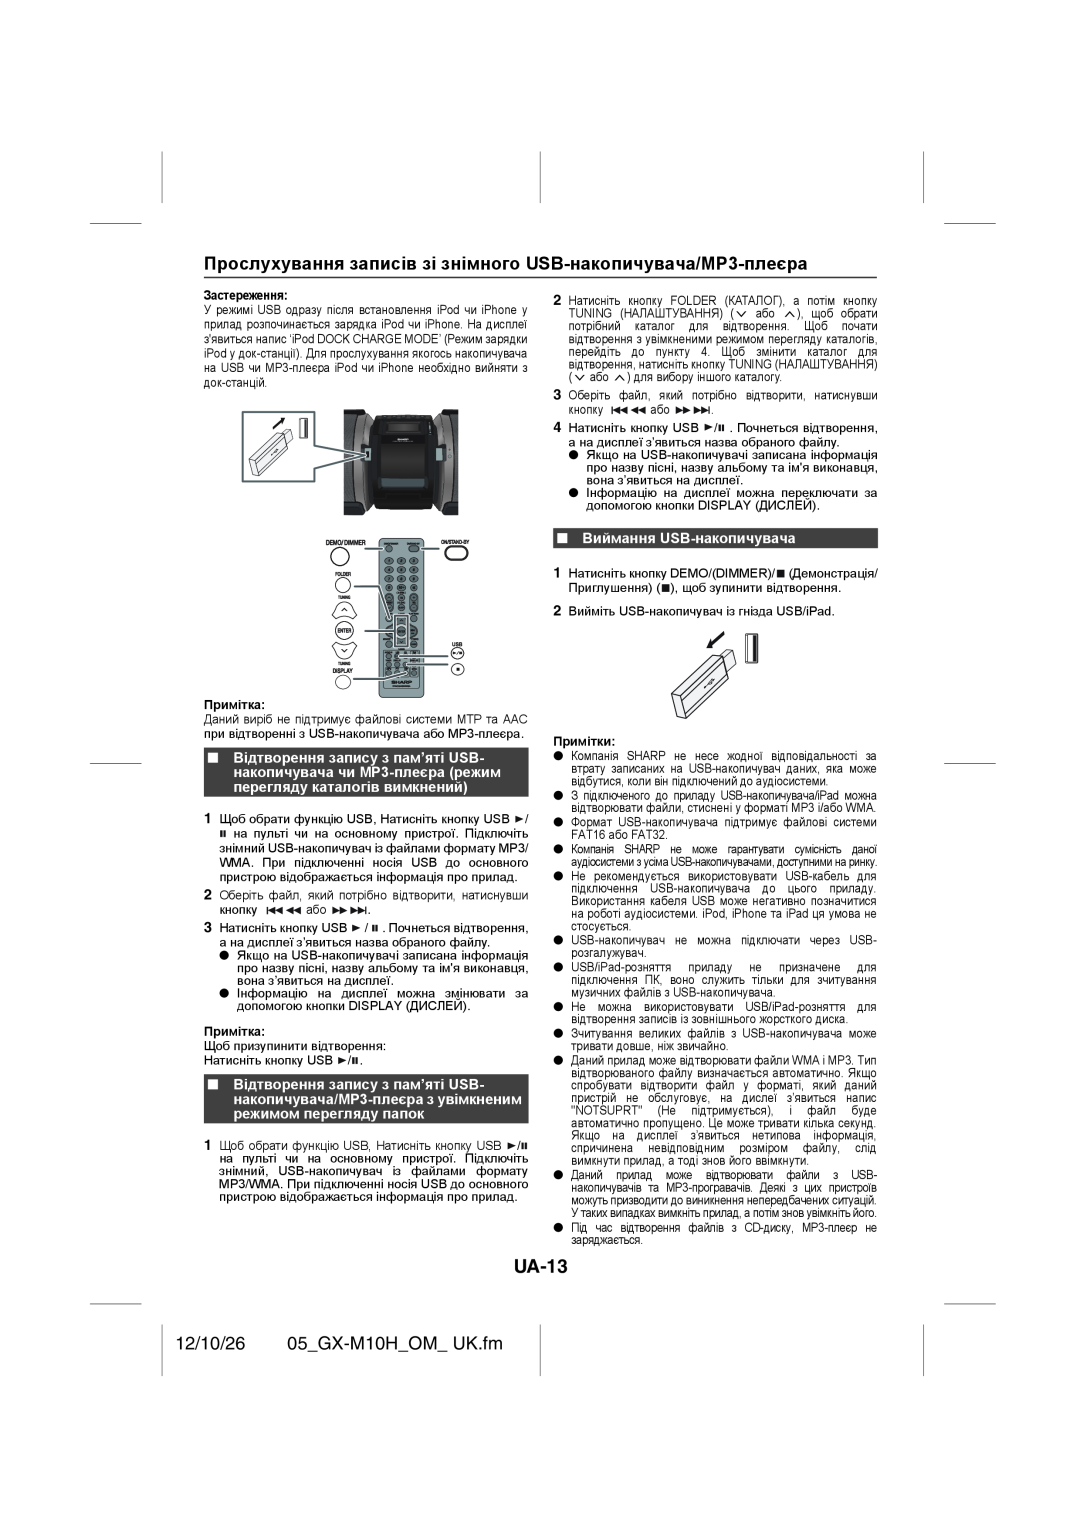 Sharp GX-M10H(OR), GX-M10H(RD) operation manual UA-13, 12/10/26 05_GX-M10H_OM_UK.fm, Виймання USB-накопичувача 